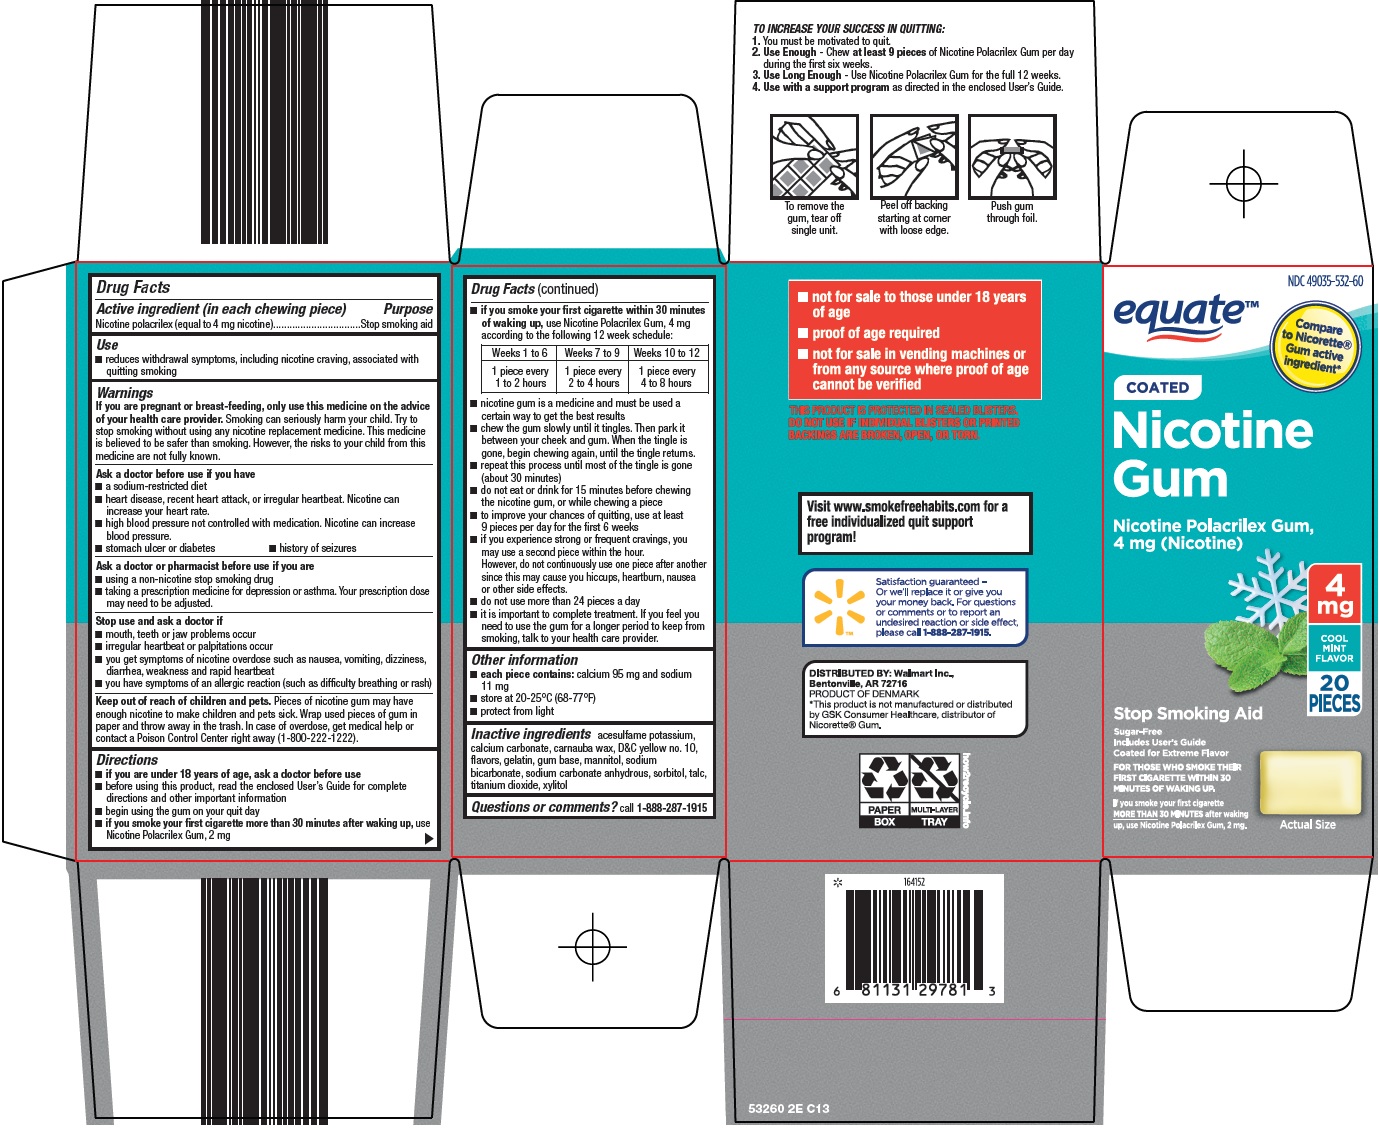 Nicotine Gum Carton Image